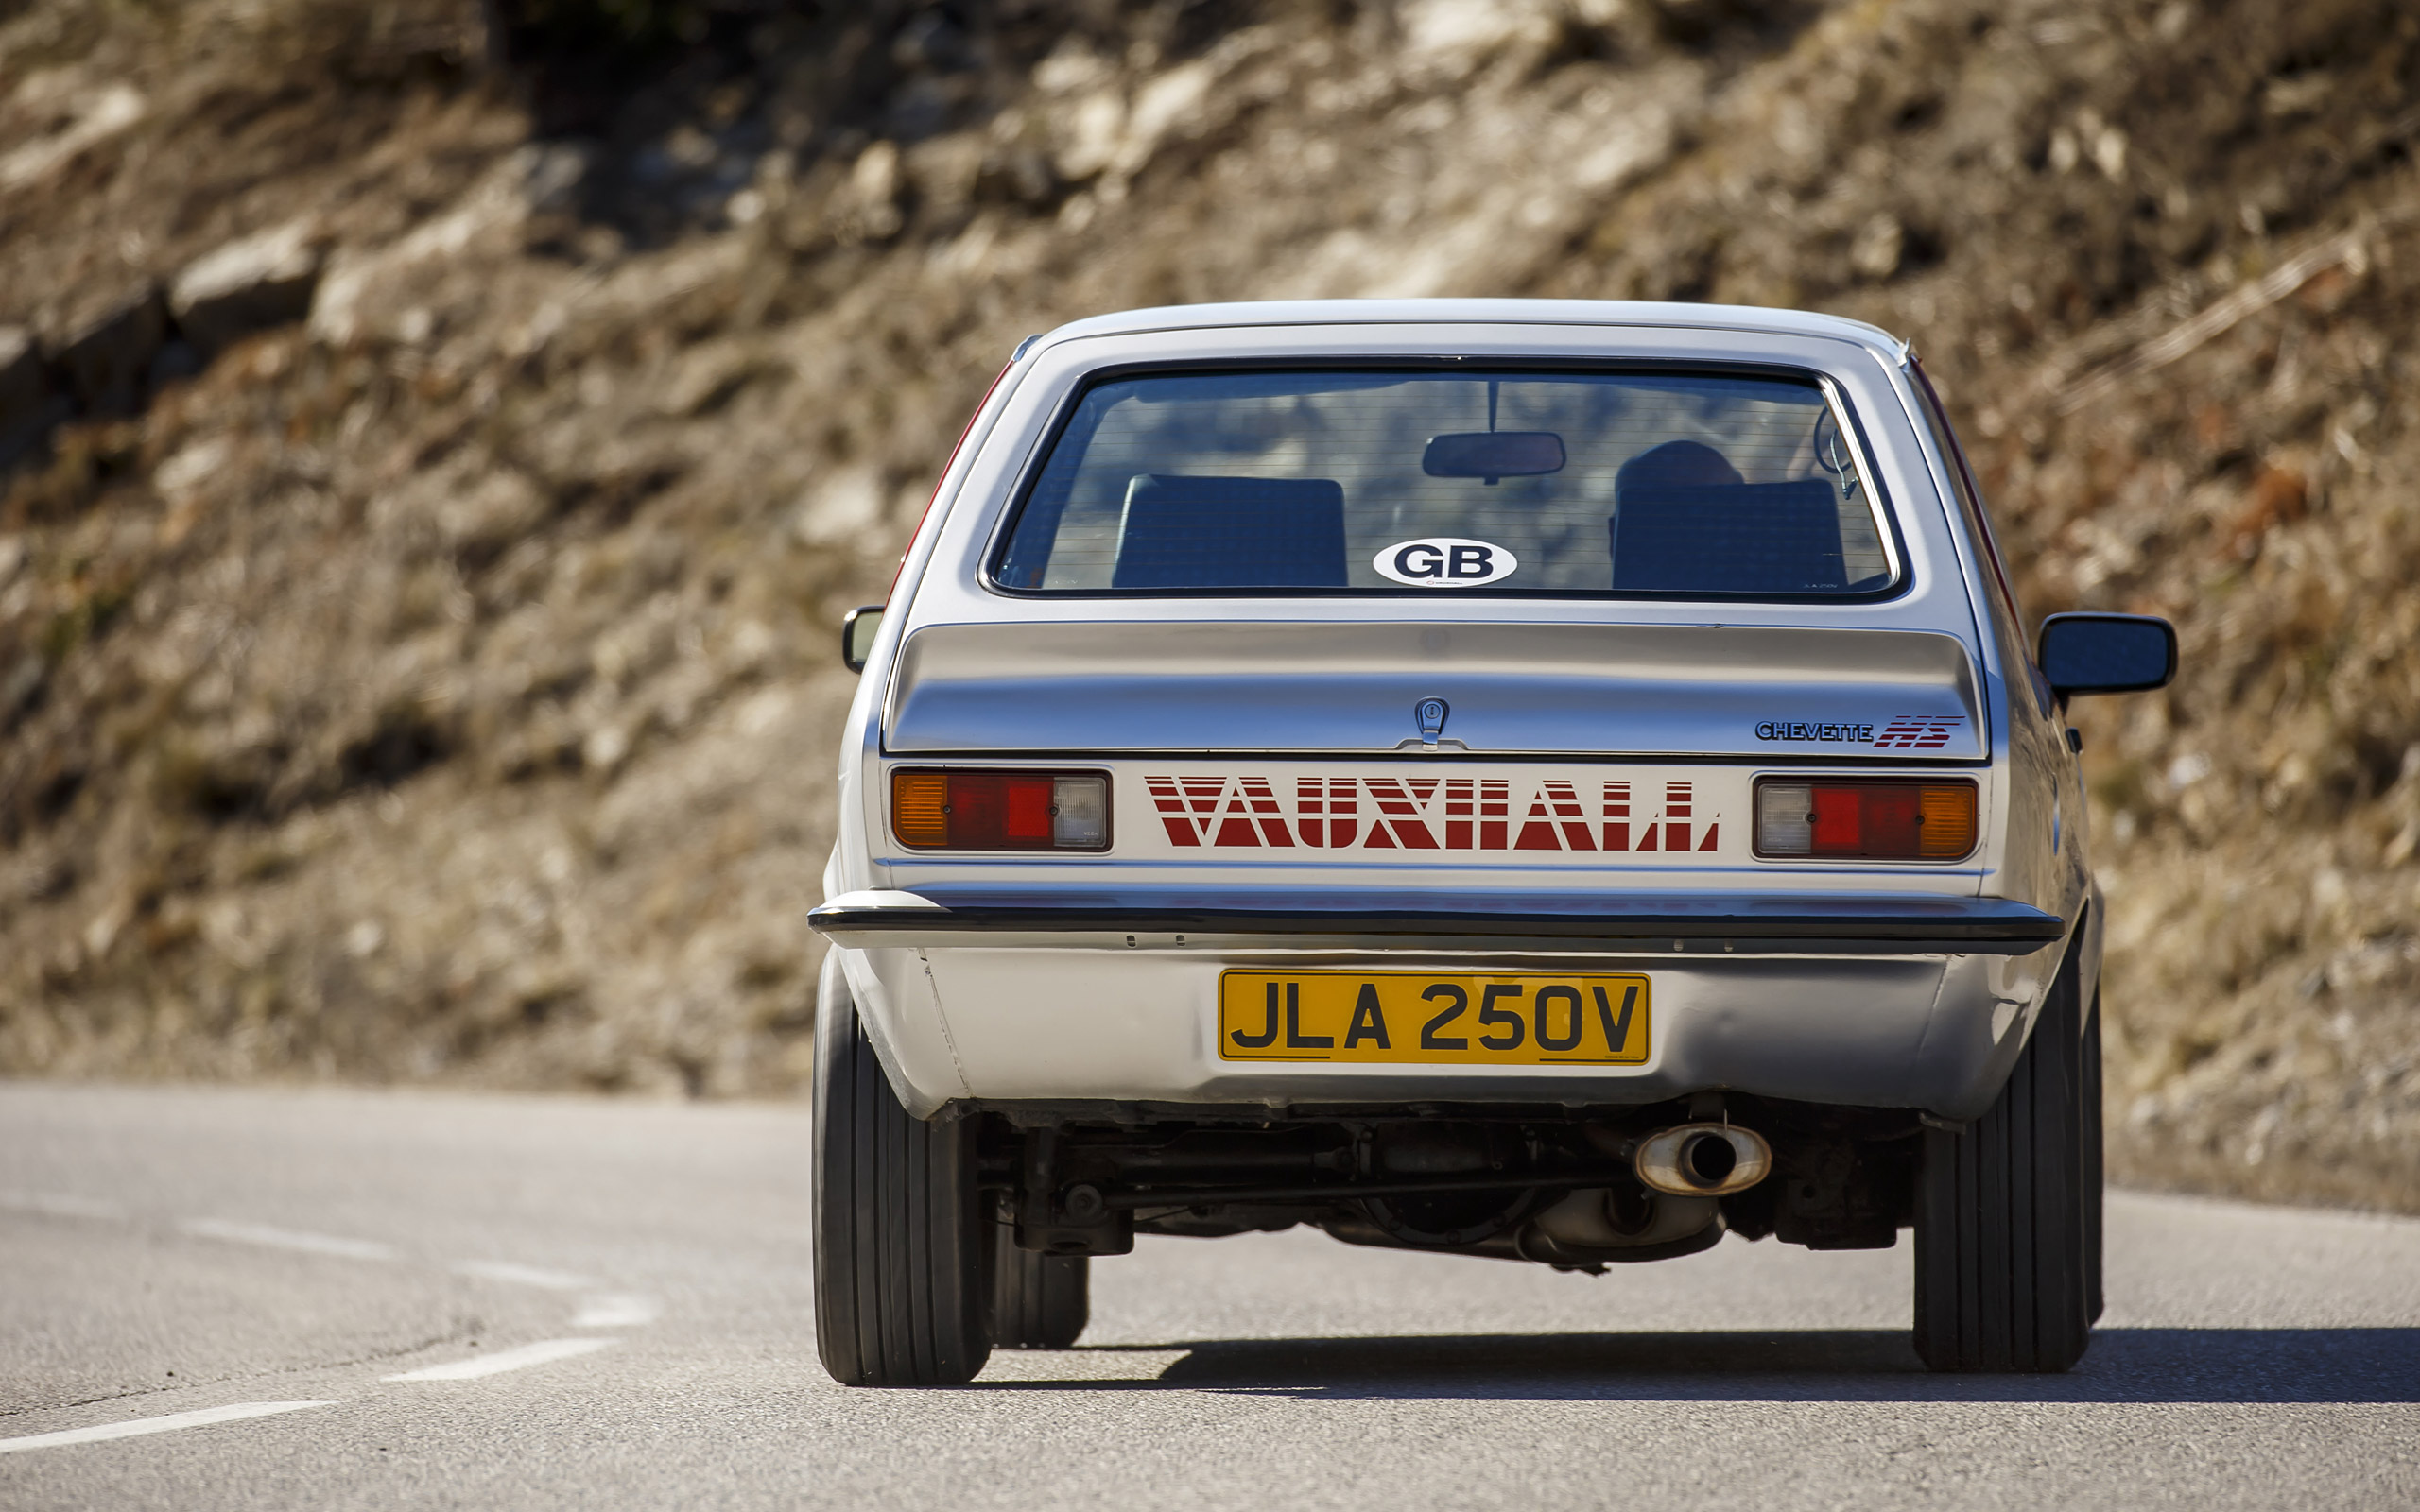  1979 Vauxhall Chevette HS Wallpaper.